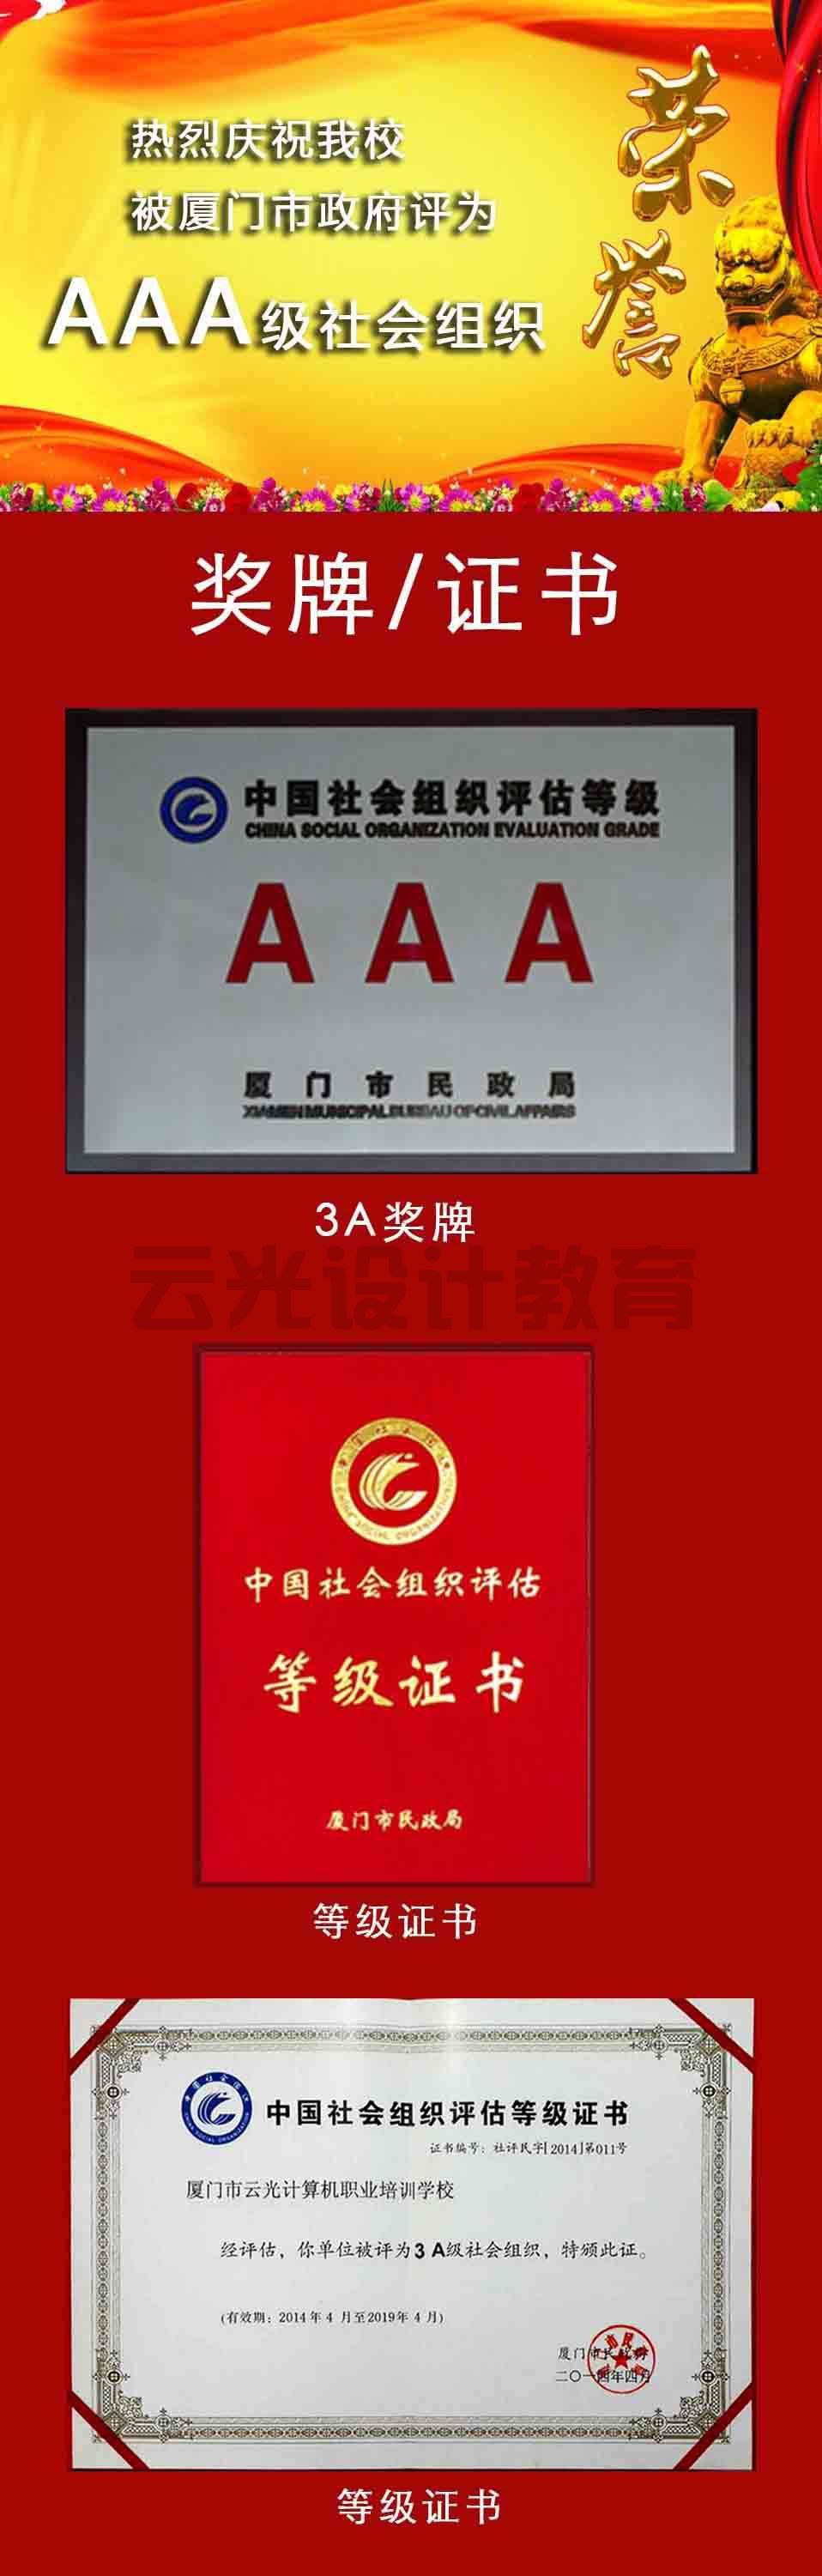 热烈庆祝我校被厦门市政府评为"AAA"级社会组织(图1)